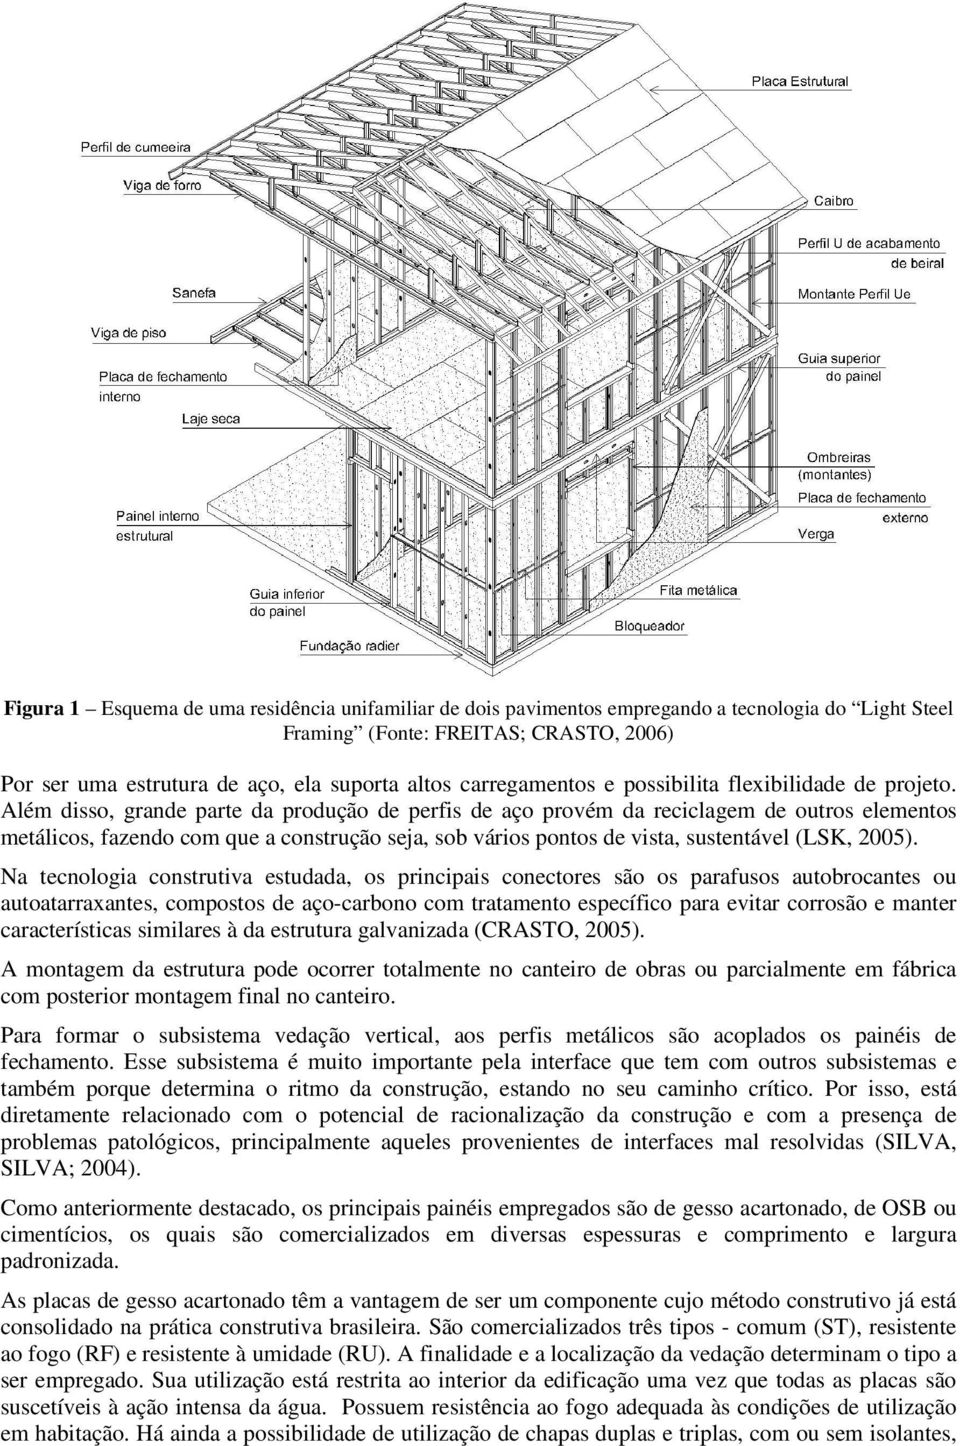 Além disso, grande parte da produção de perfis de aço provém da reciclagem de outros elementos metálicos, fazendo com que a construção seja, sob vários pontos de vista, sustentável (LSK, 2005).